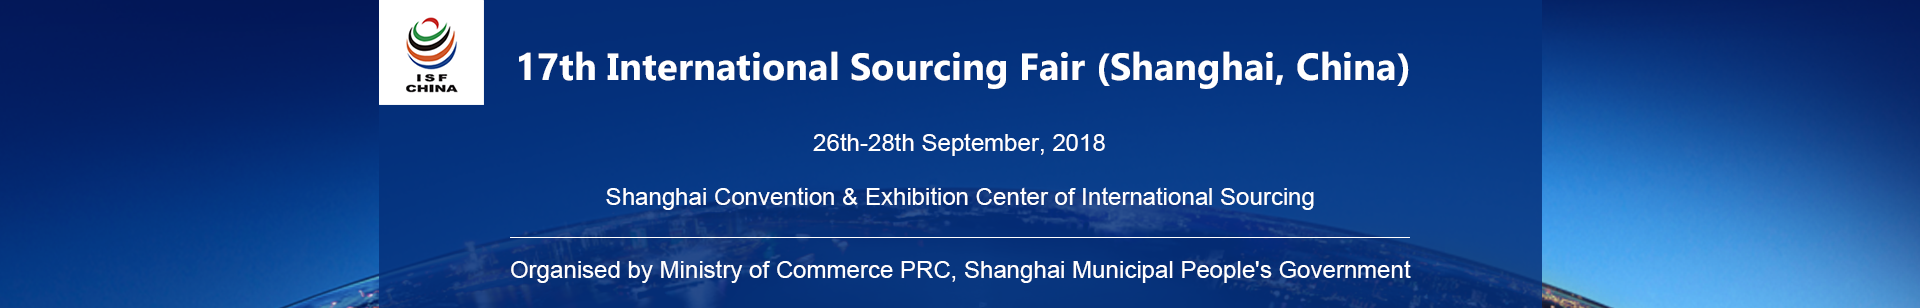 The 17th International Sourcing Fair (Shanghai, China)